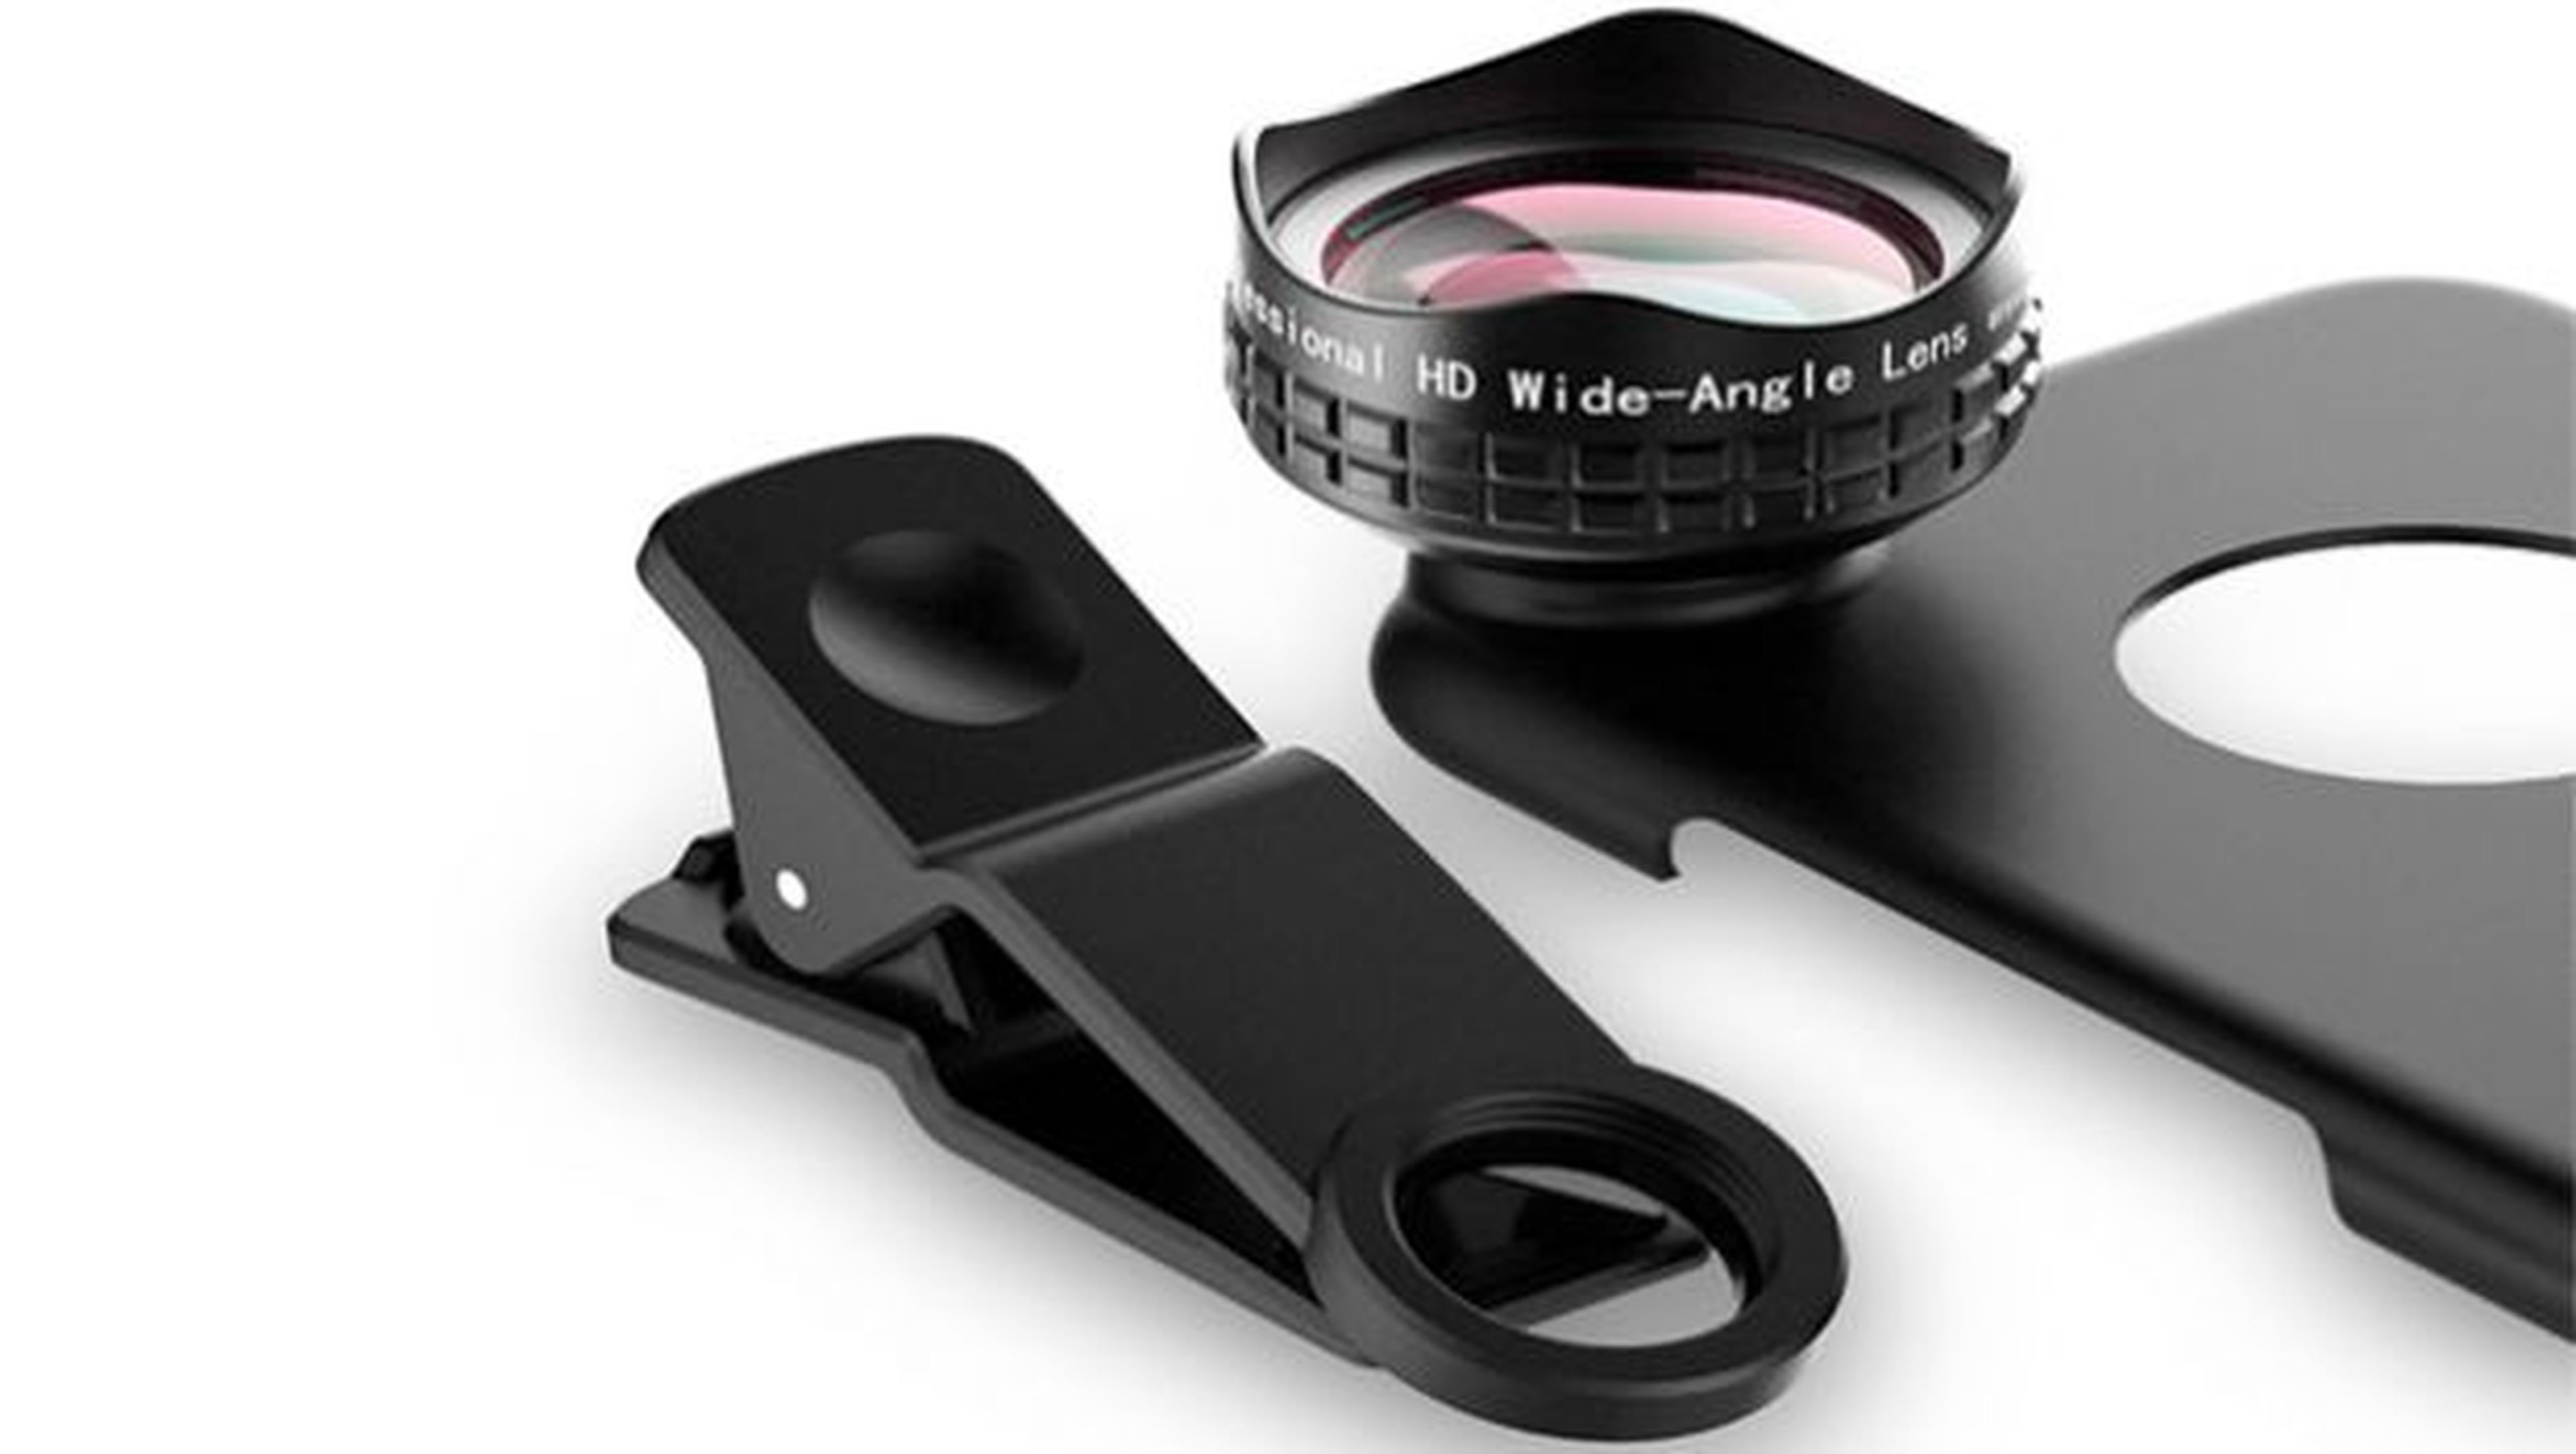 Con este kit podrás mantener proteger tu dispositivo y, llegado el momento, instalarle la lente gran angular de forma rápida y segura.